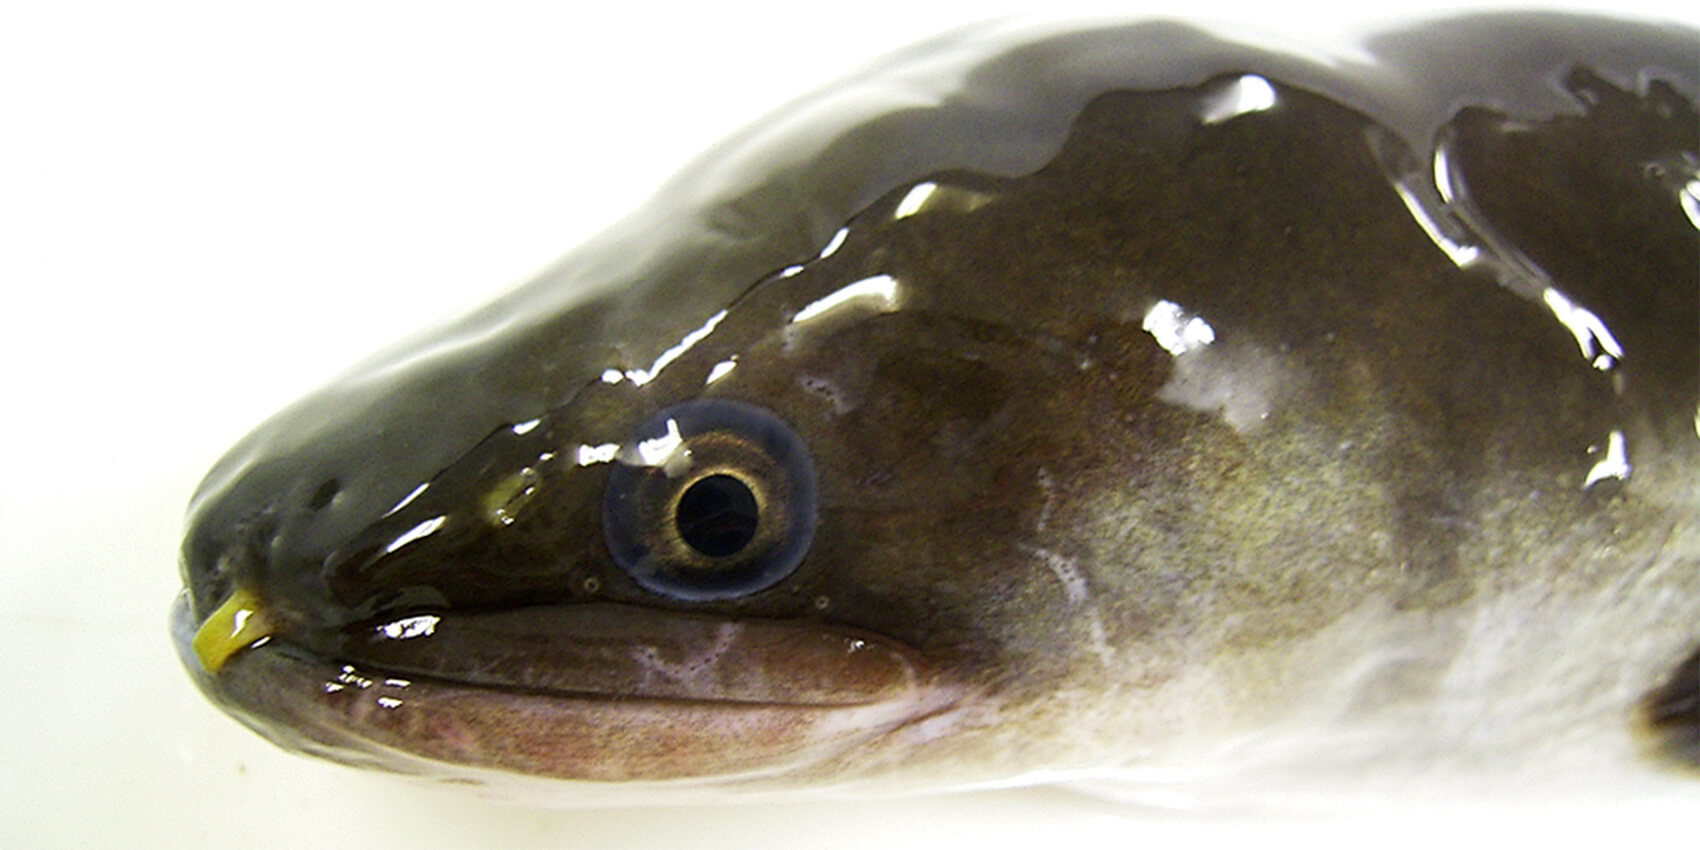 湿地帯生物としてのウナギという魚の魅力 記事カテゴリ Buna Bun Ichi Nature Web Magazine 文一総合出版